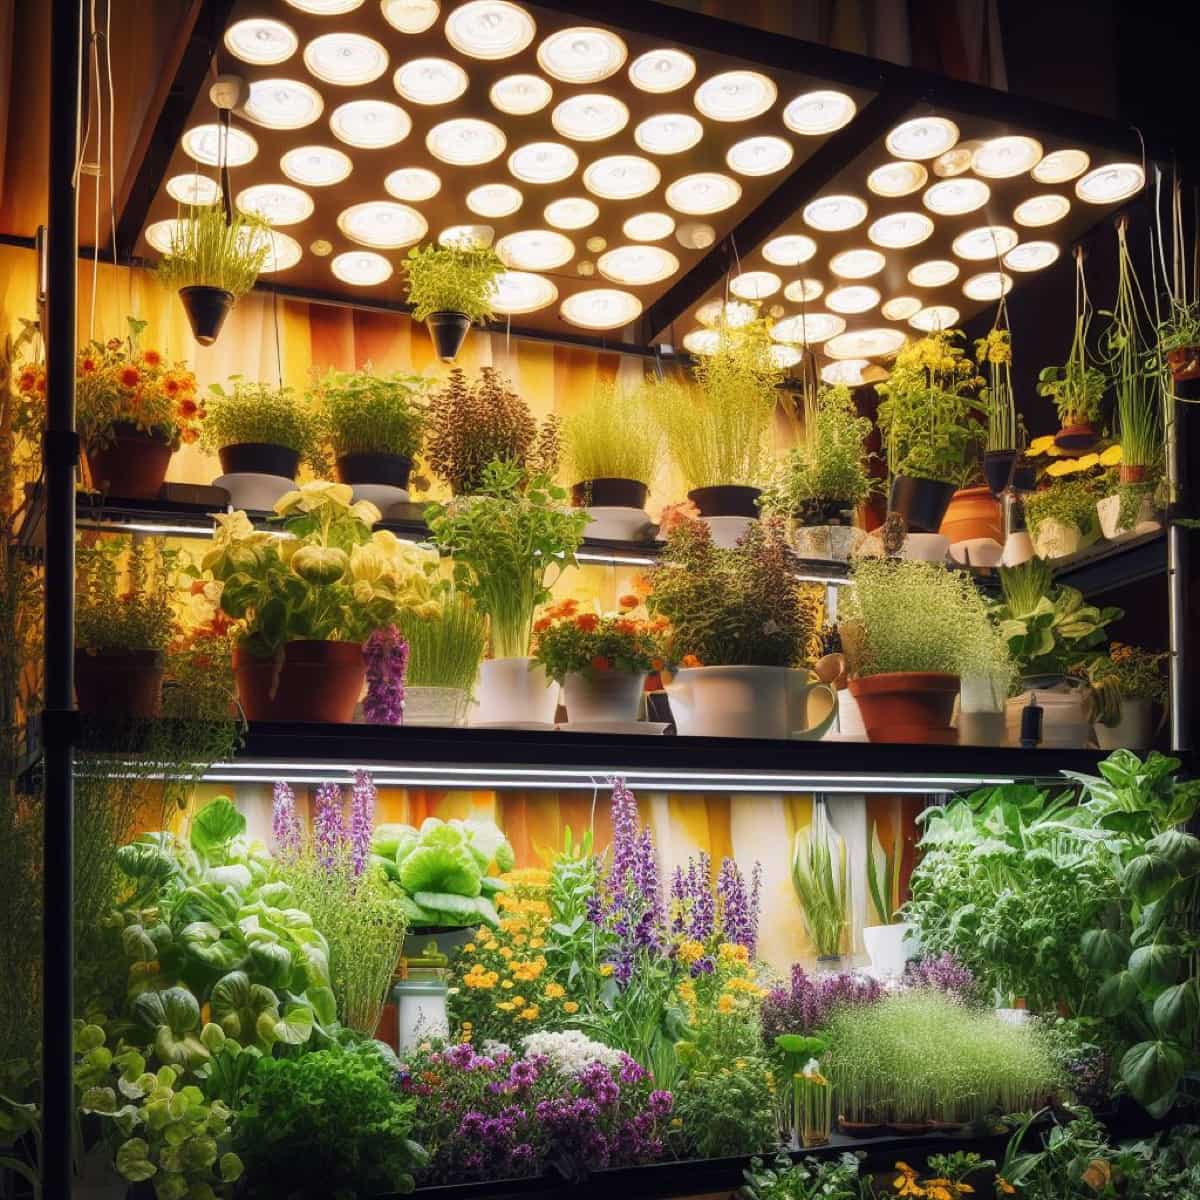 Top 10 Best Indoor Gardening Lights